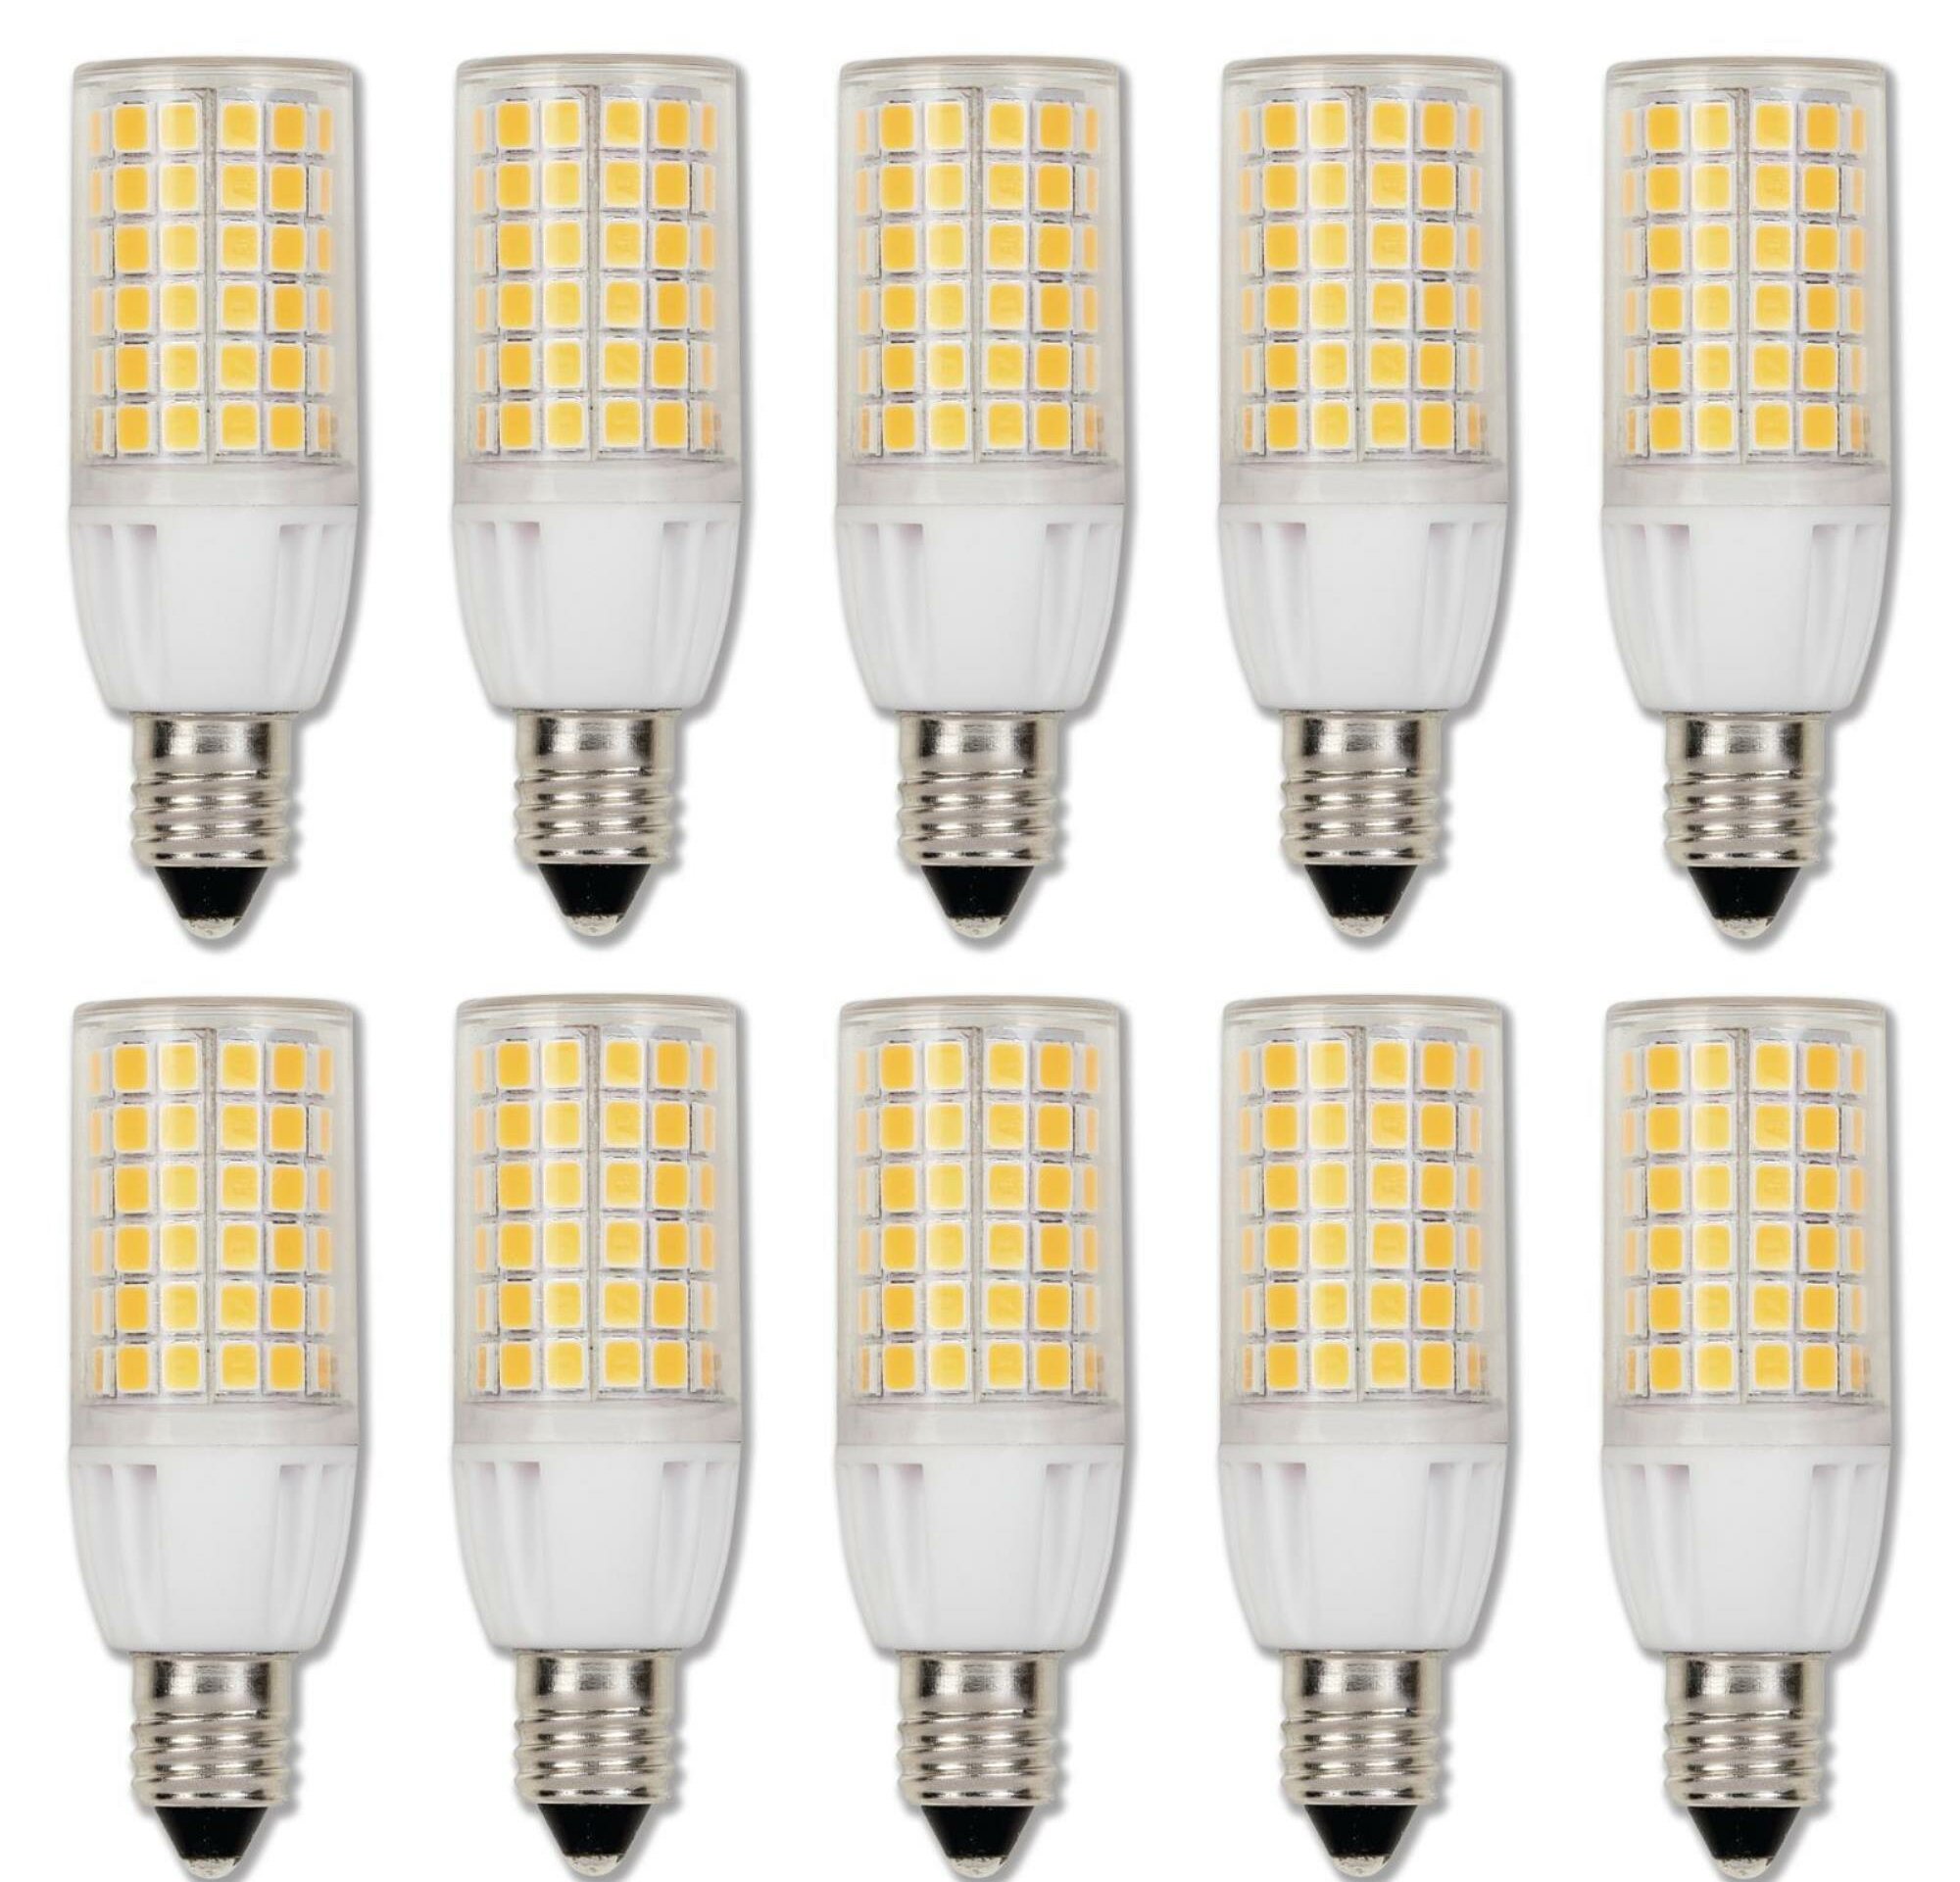 6W Pack of 4 E11 LED Light Bulbs Dimmable 60W 70W Halogen Equivalent Warm White 3000k 600 LM CRI 85 110v 120v JD T4 E11 Mini Candelabra Base Bulb for Home Lighting 